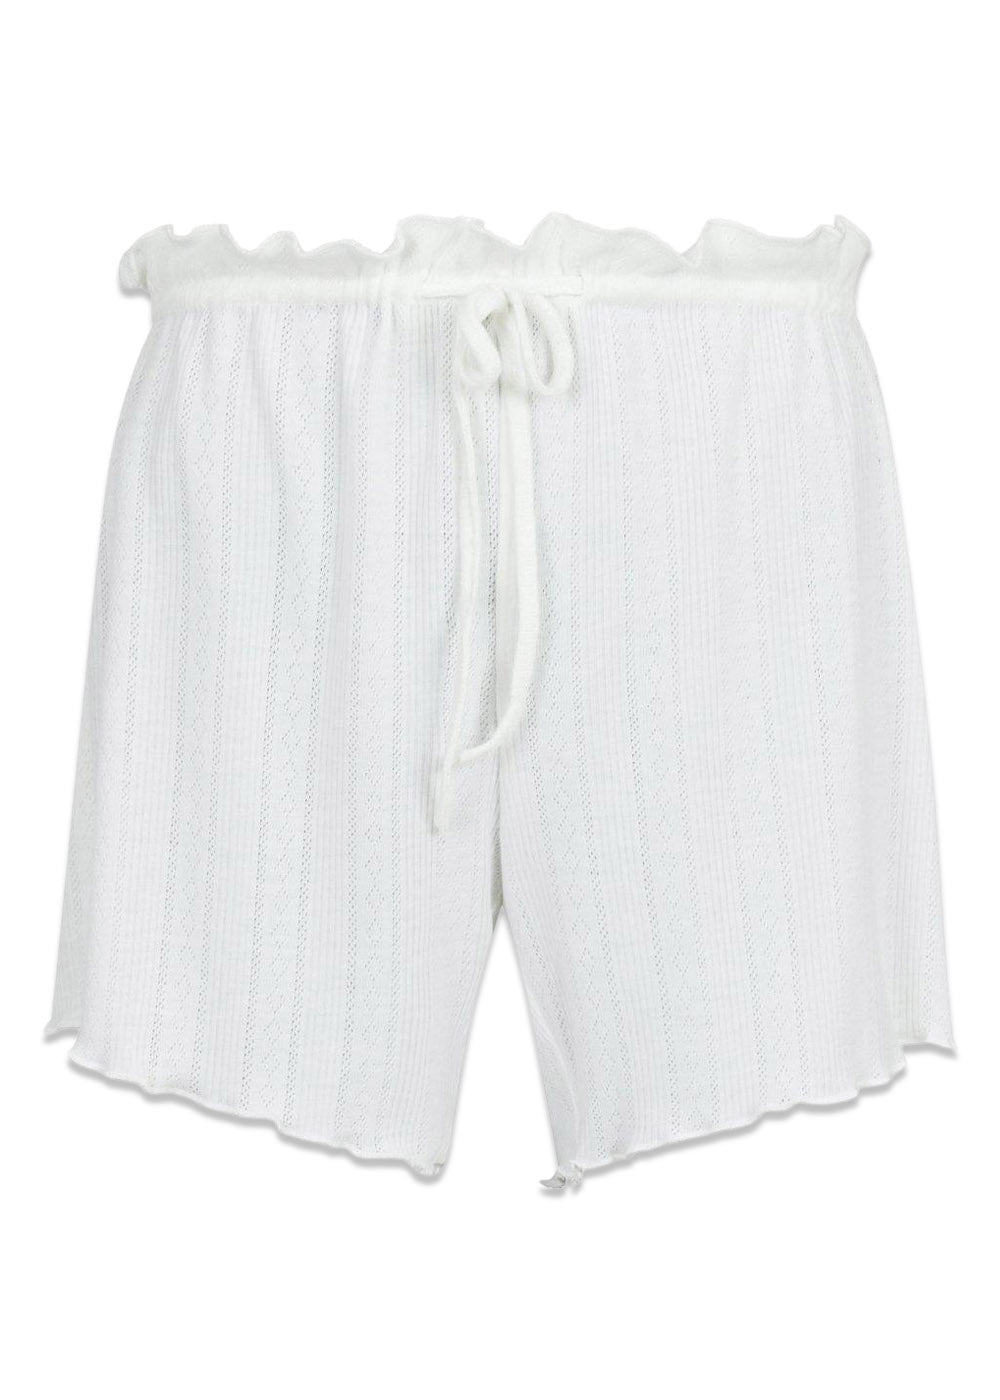 Merritt Pointelle Shorts - White